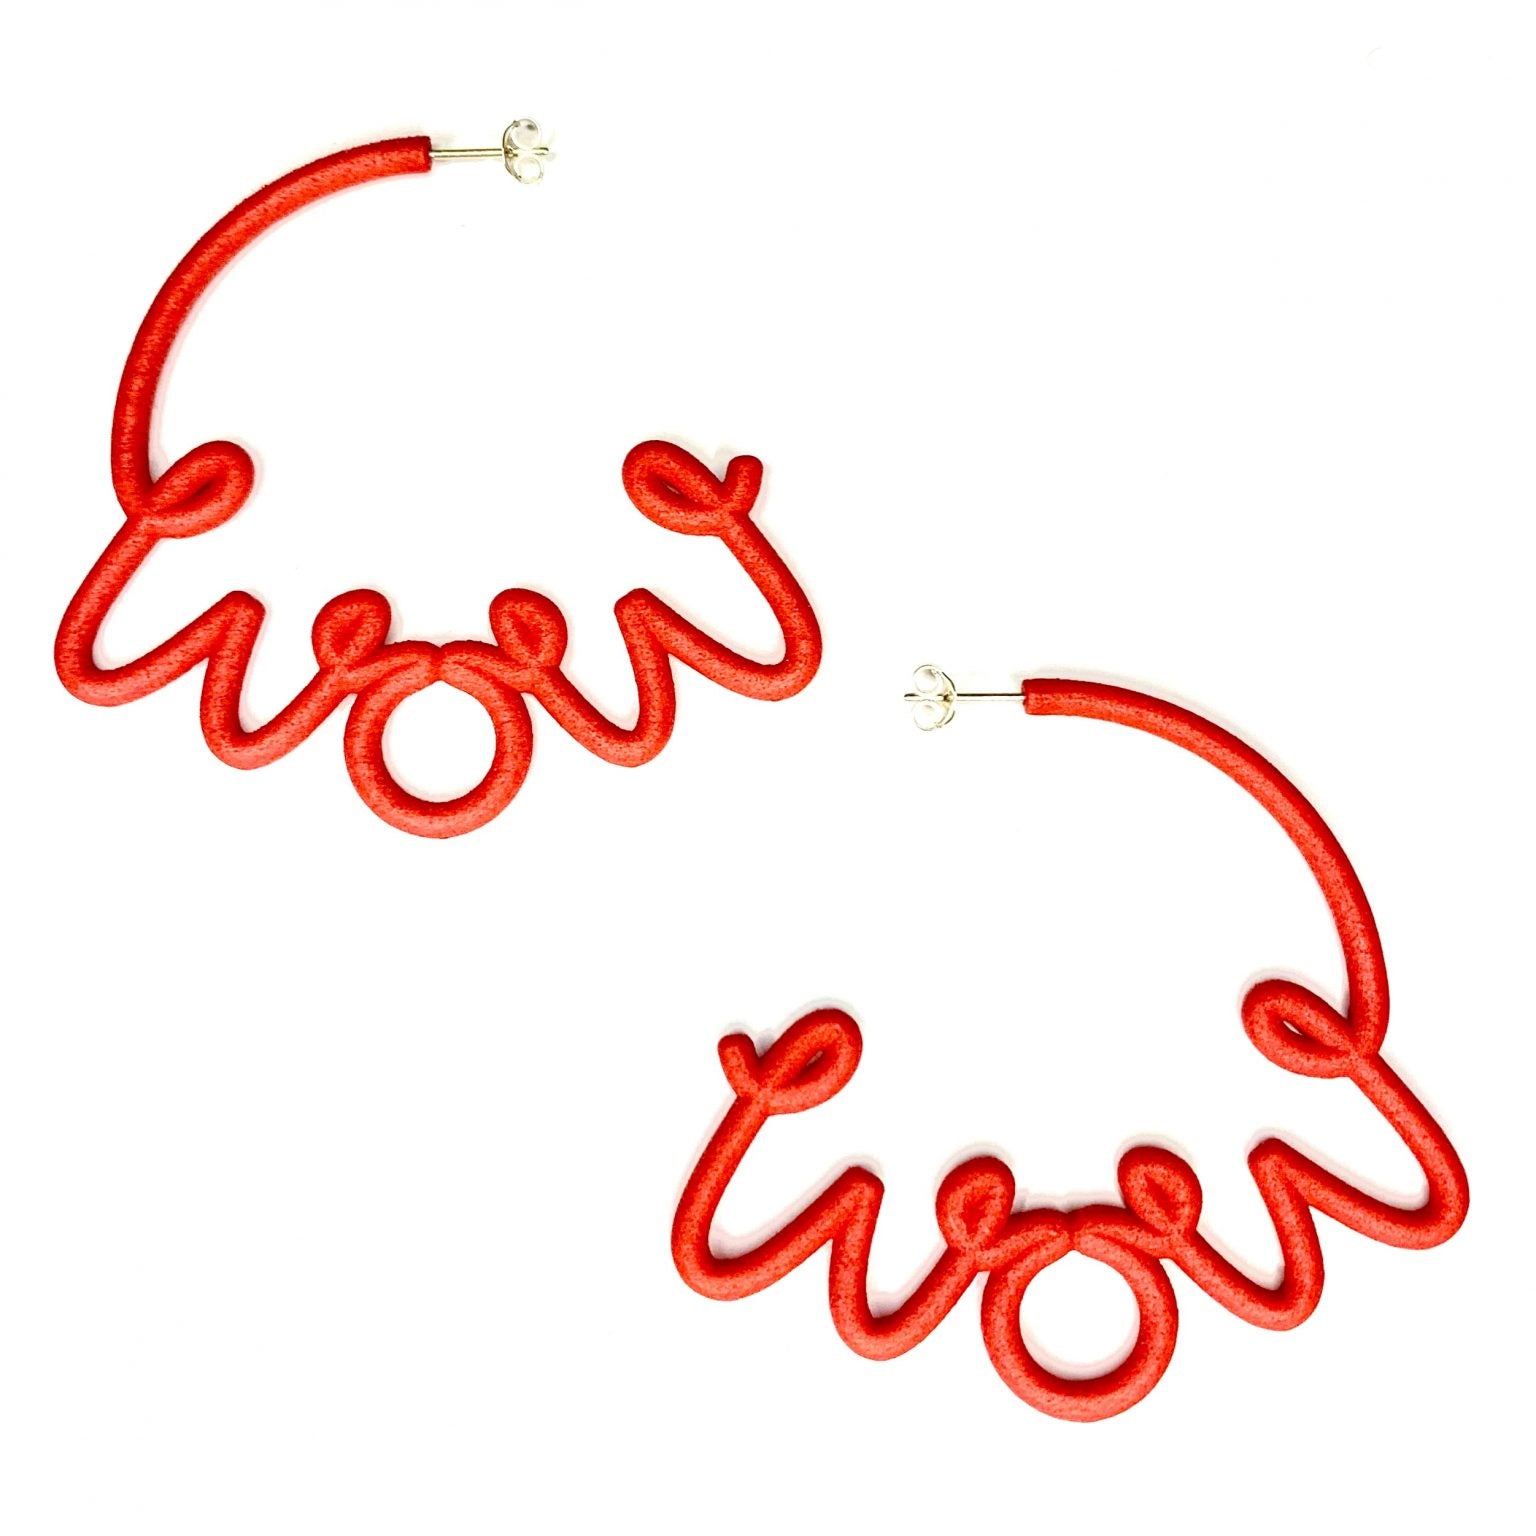 This is ‘WOW’ hoop earrings